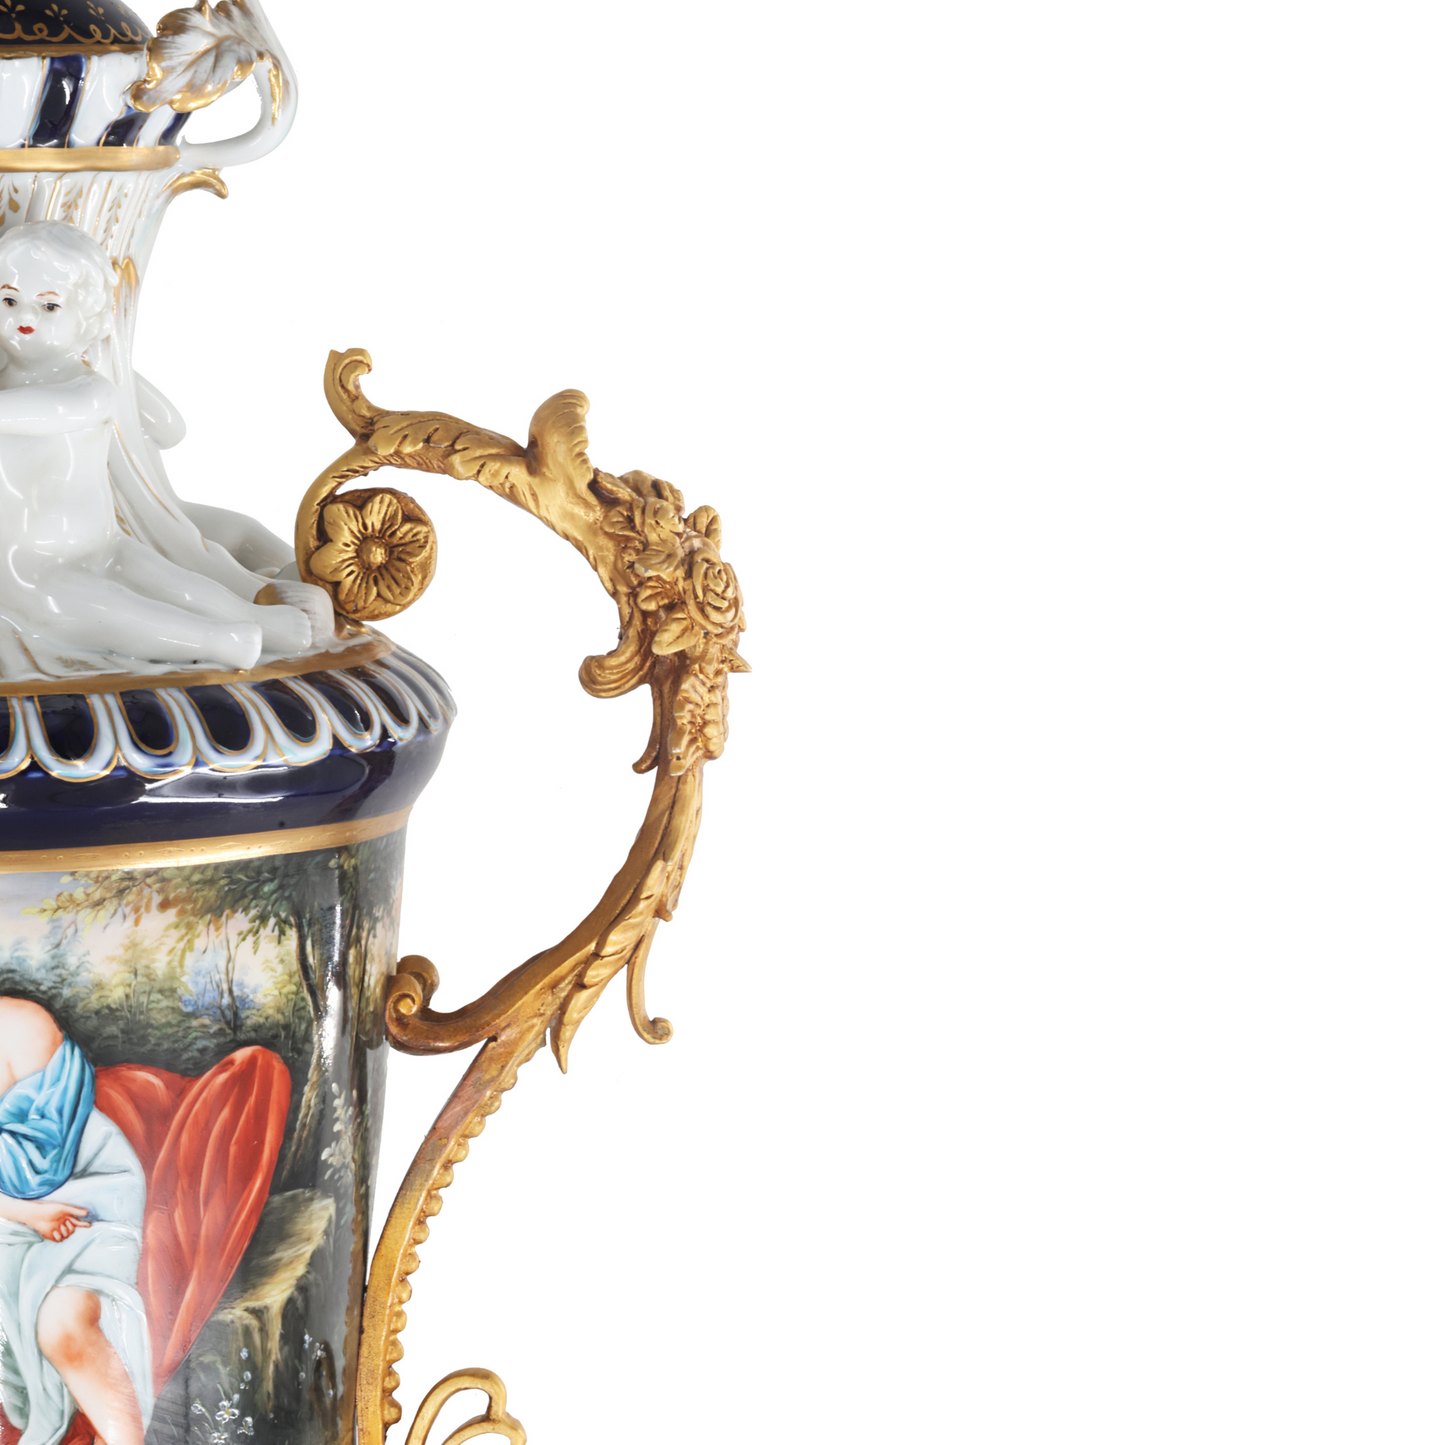 Bronze Handle Louis XV Style Porcelain Vase